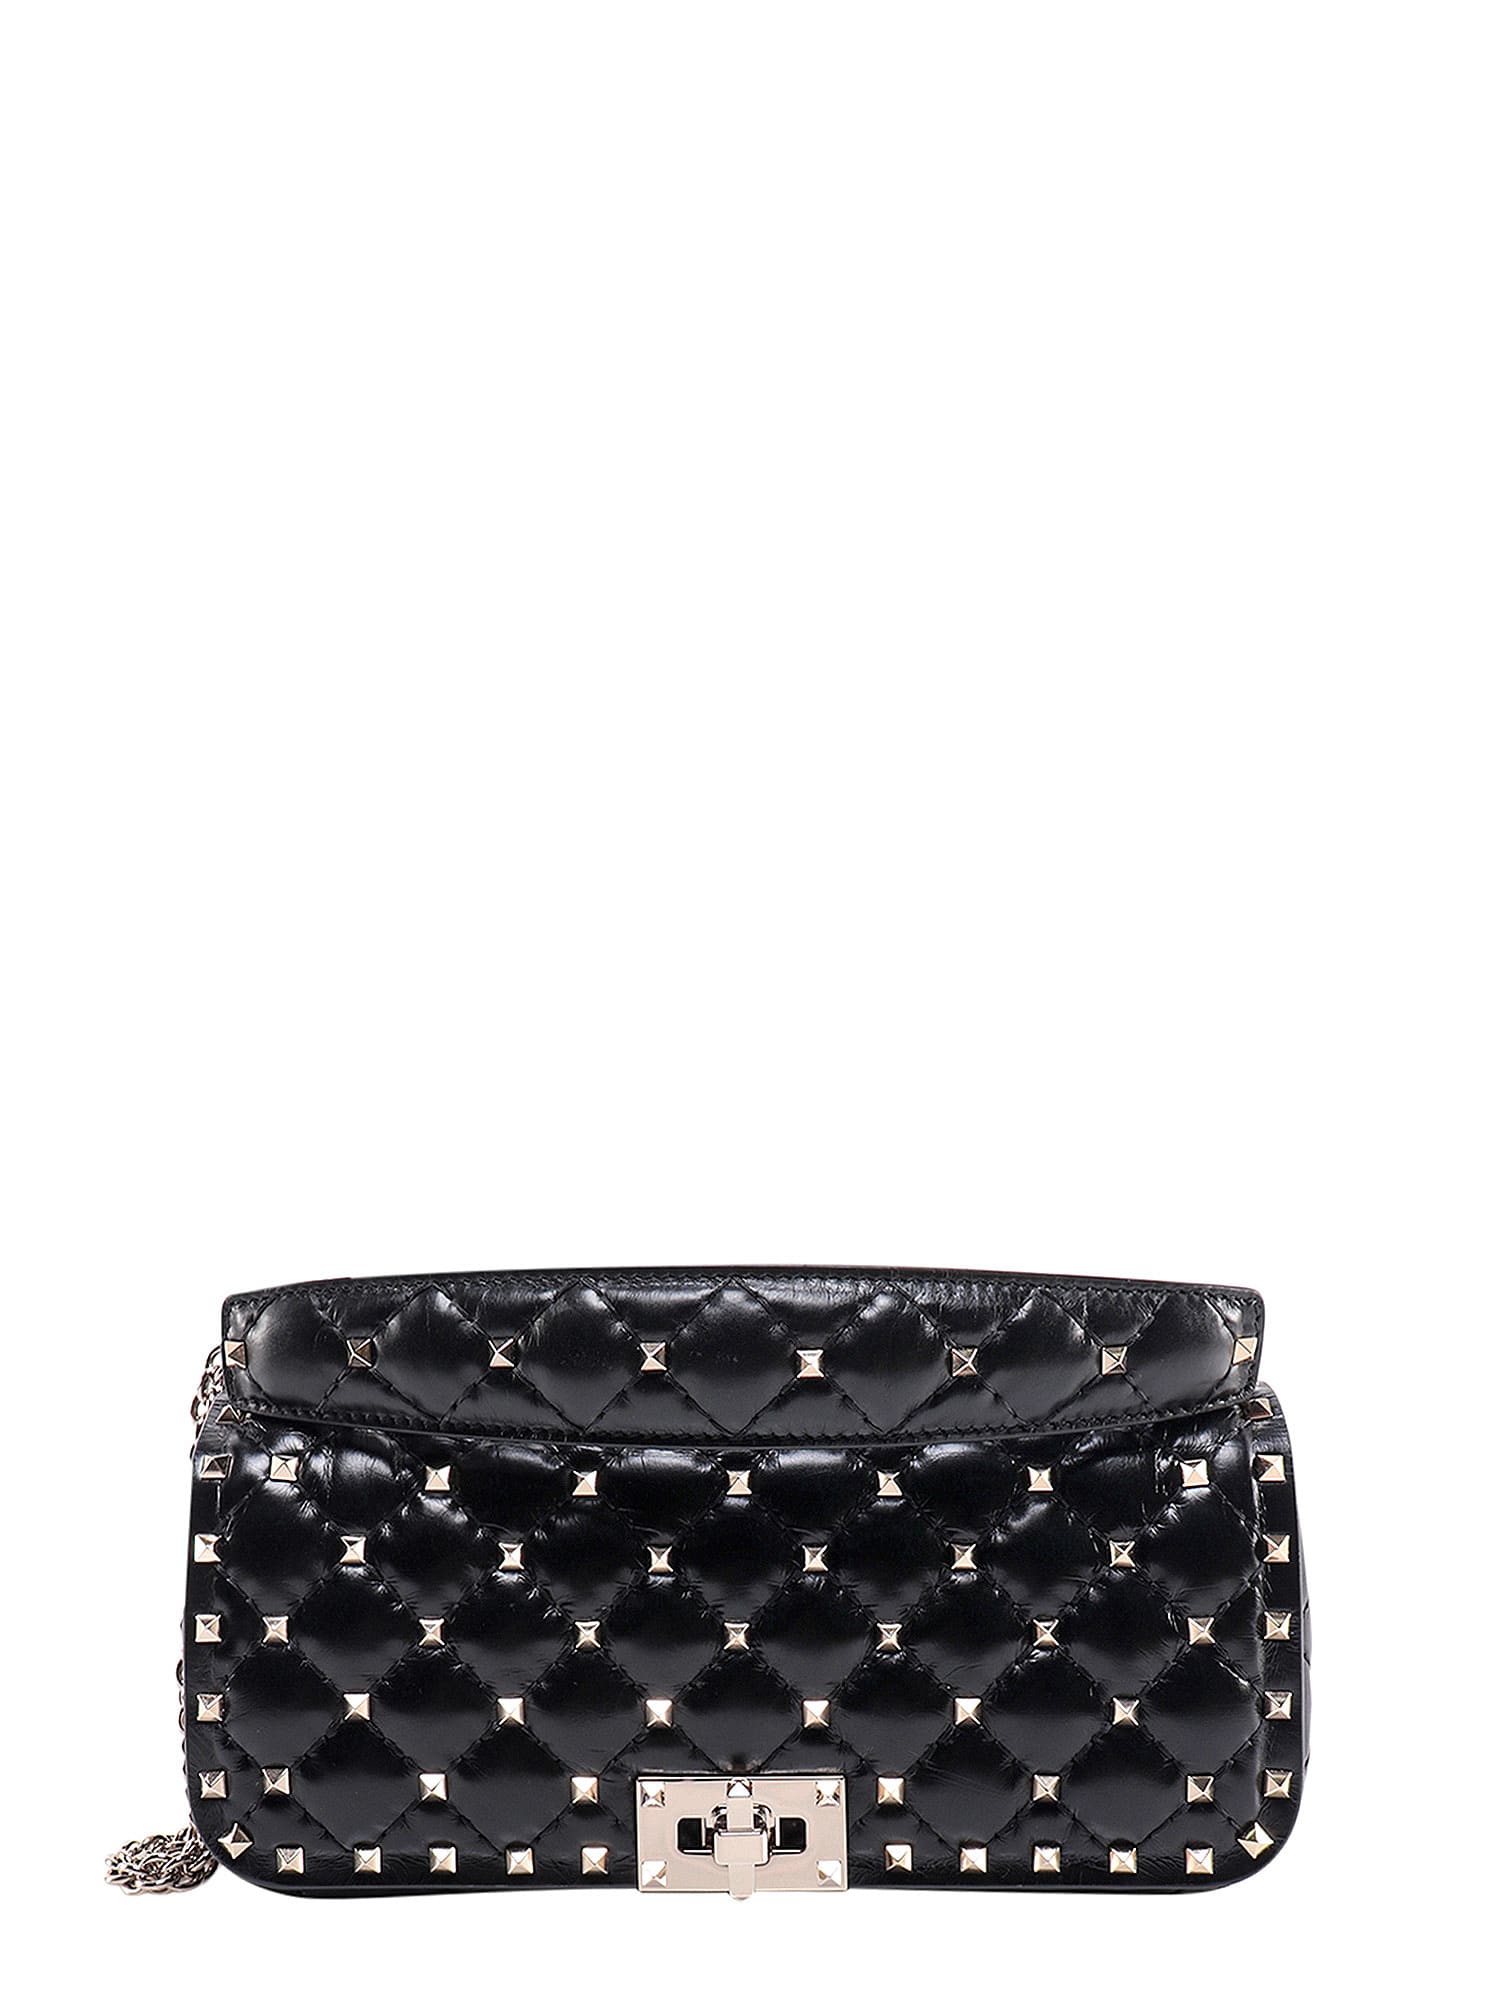 Rockstud Spike Small Leather Shoulder Bag in Black - Valentino Garavani